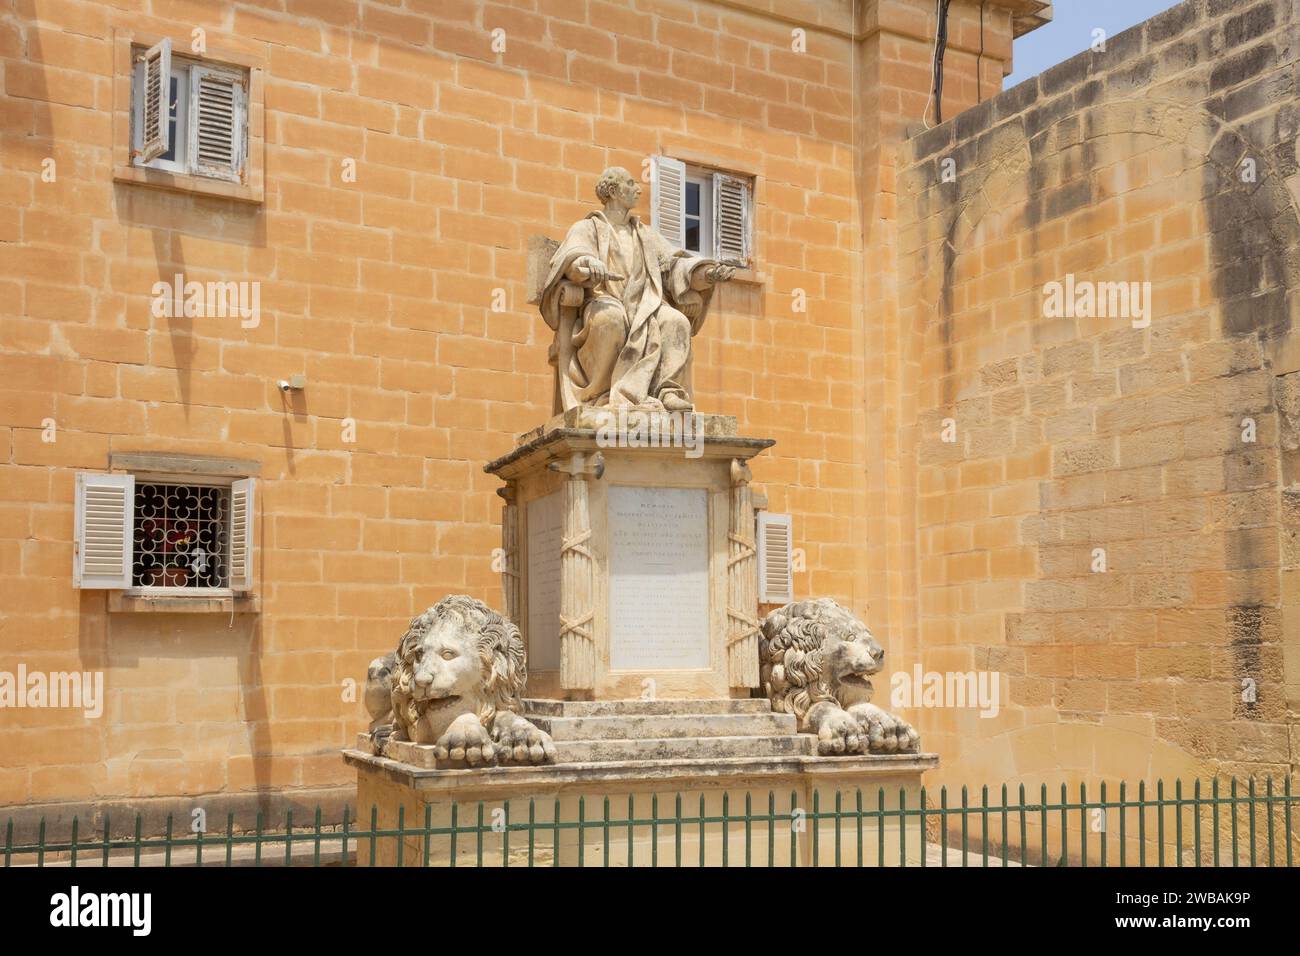 Upper Barrakka Gardens, Malta, la Valletta. Statua di Sir Giuseppe Niccolo Zammit, c.1768 -1823. Giudice maltese. Foto Stock